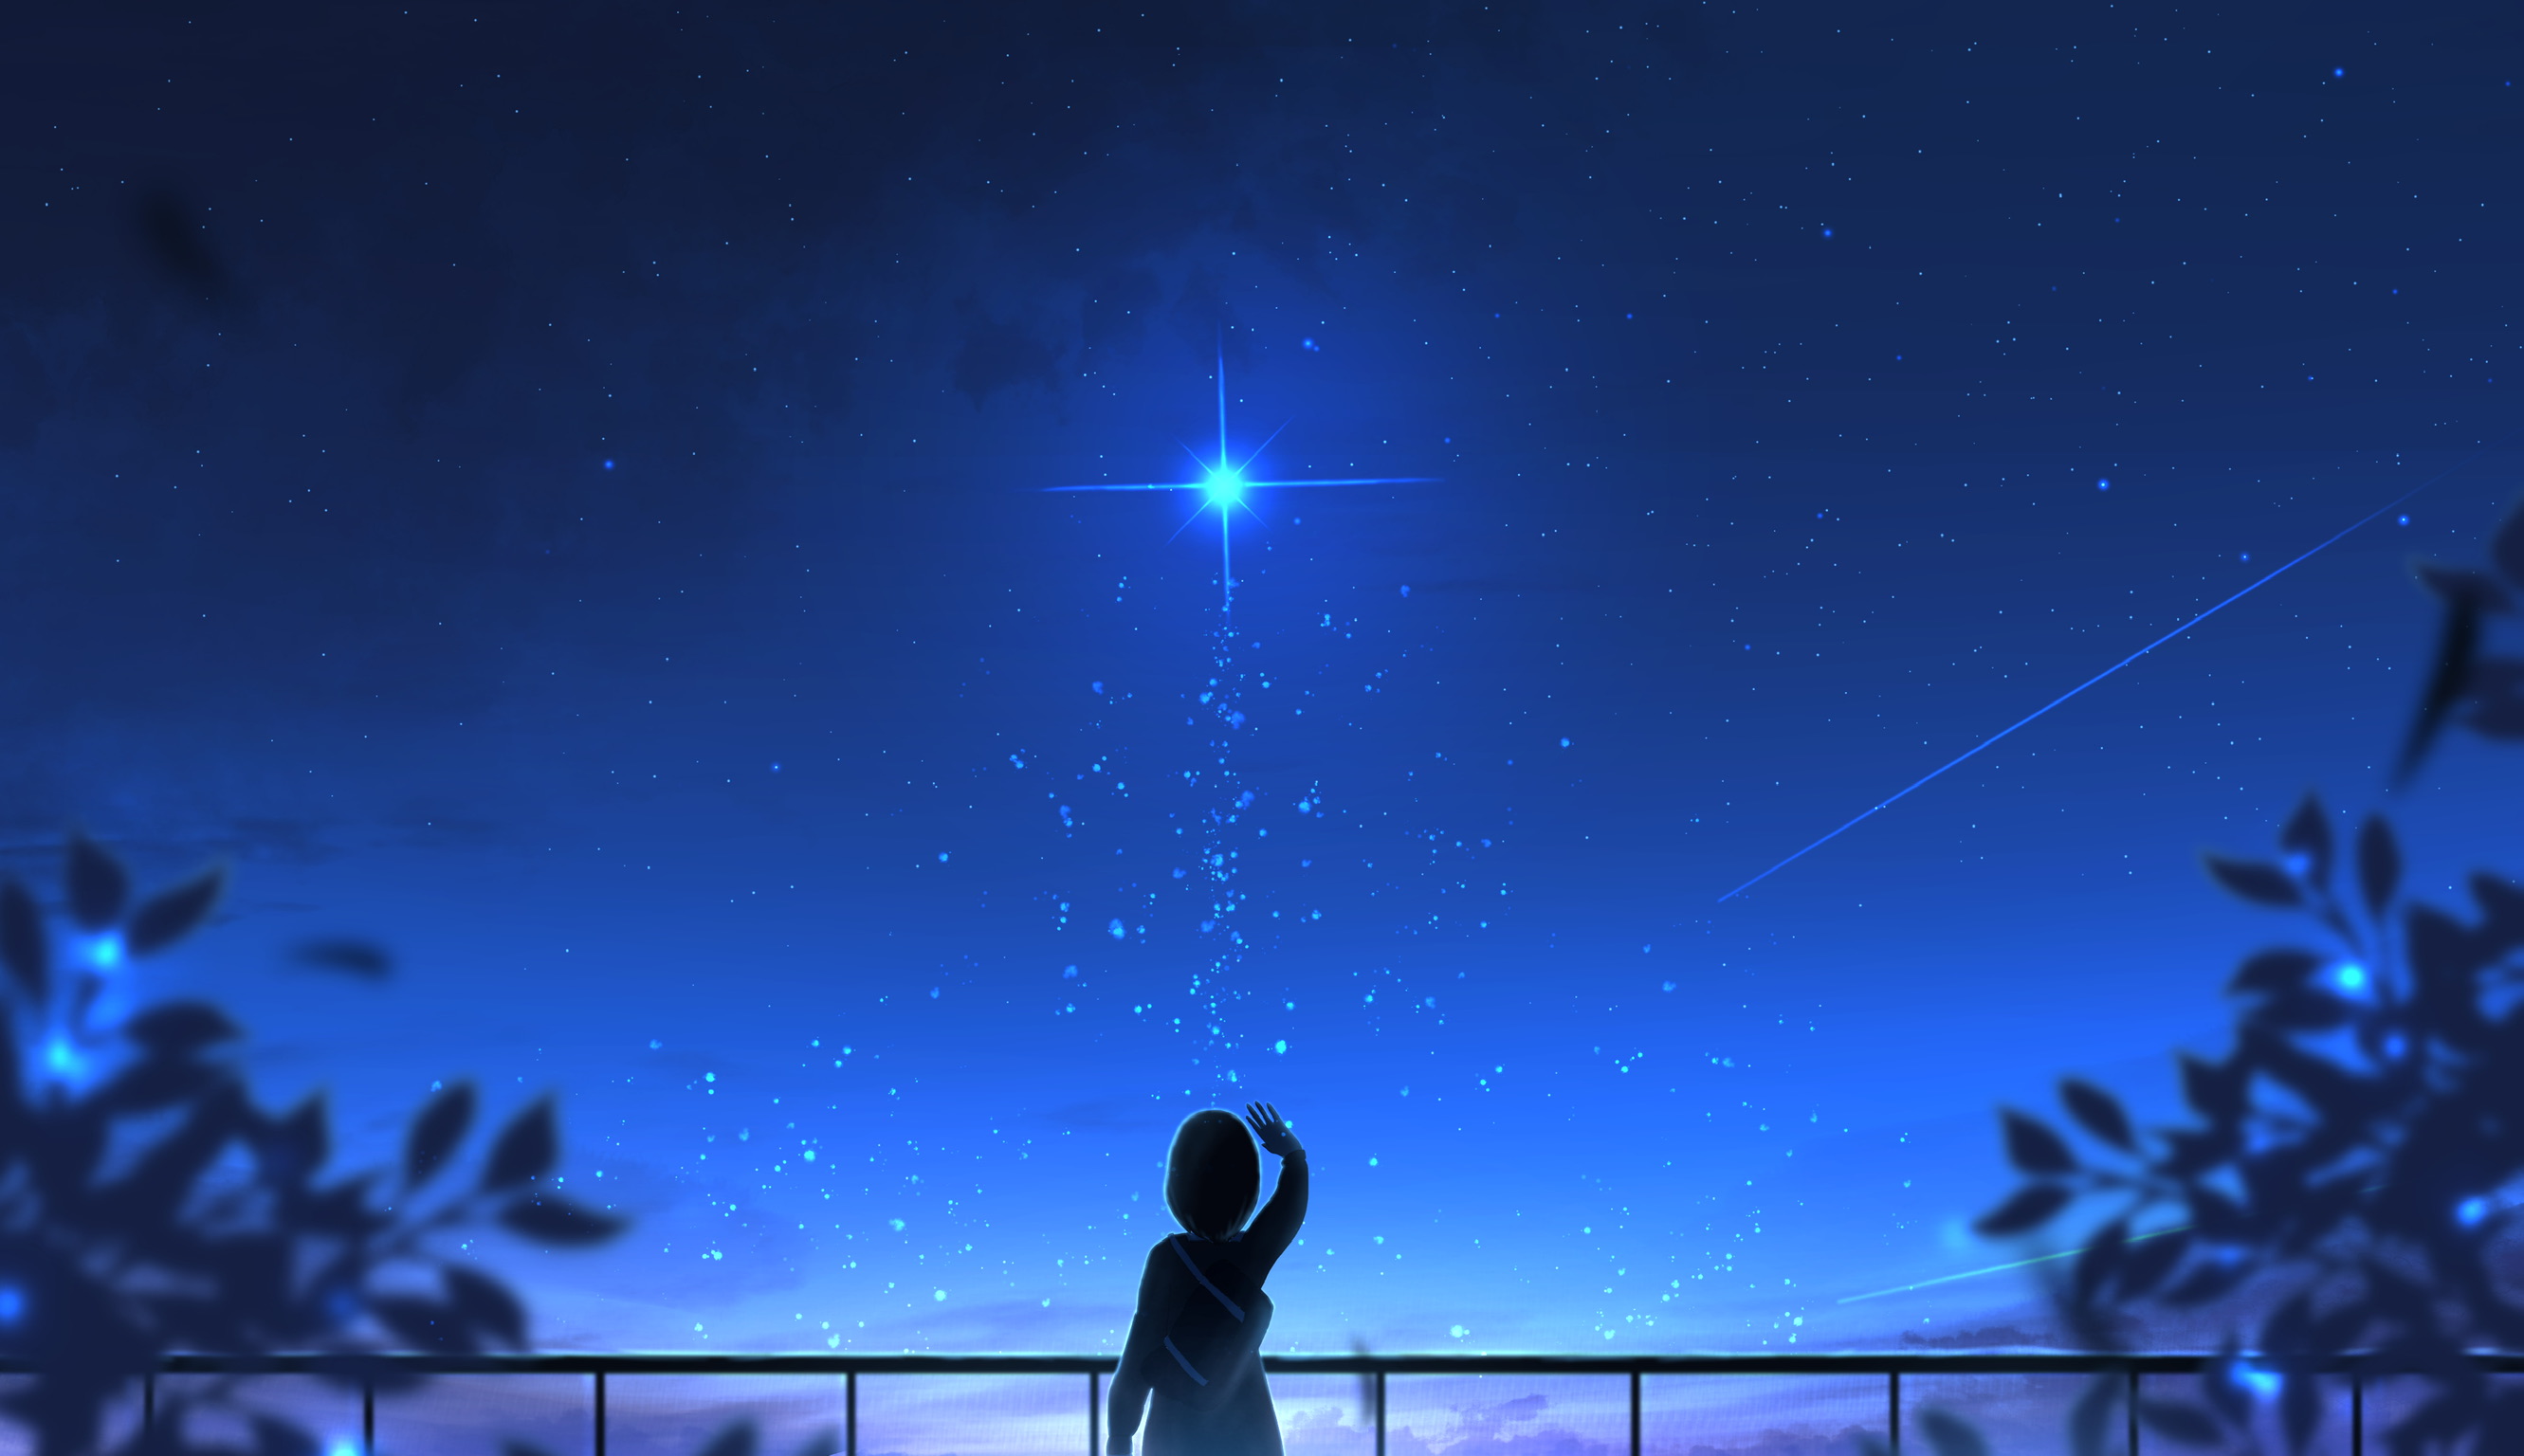 Скачать обои бесплатно Аниме, Небо, Звезды, Девочка, Ландшафт картинка на рабочий стол ПК